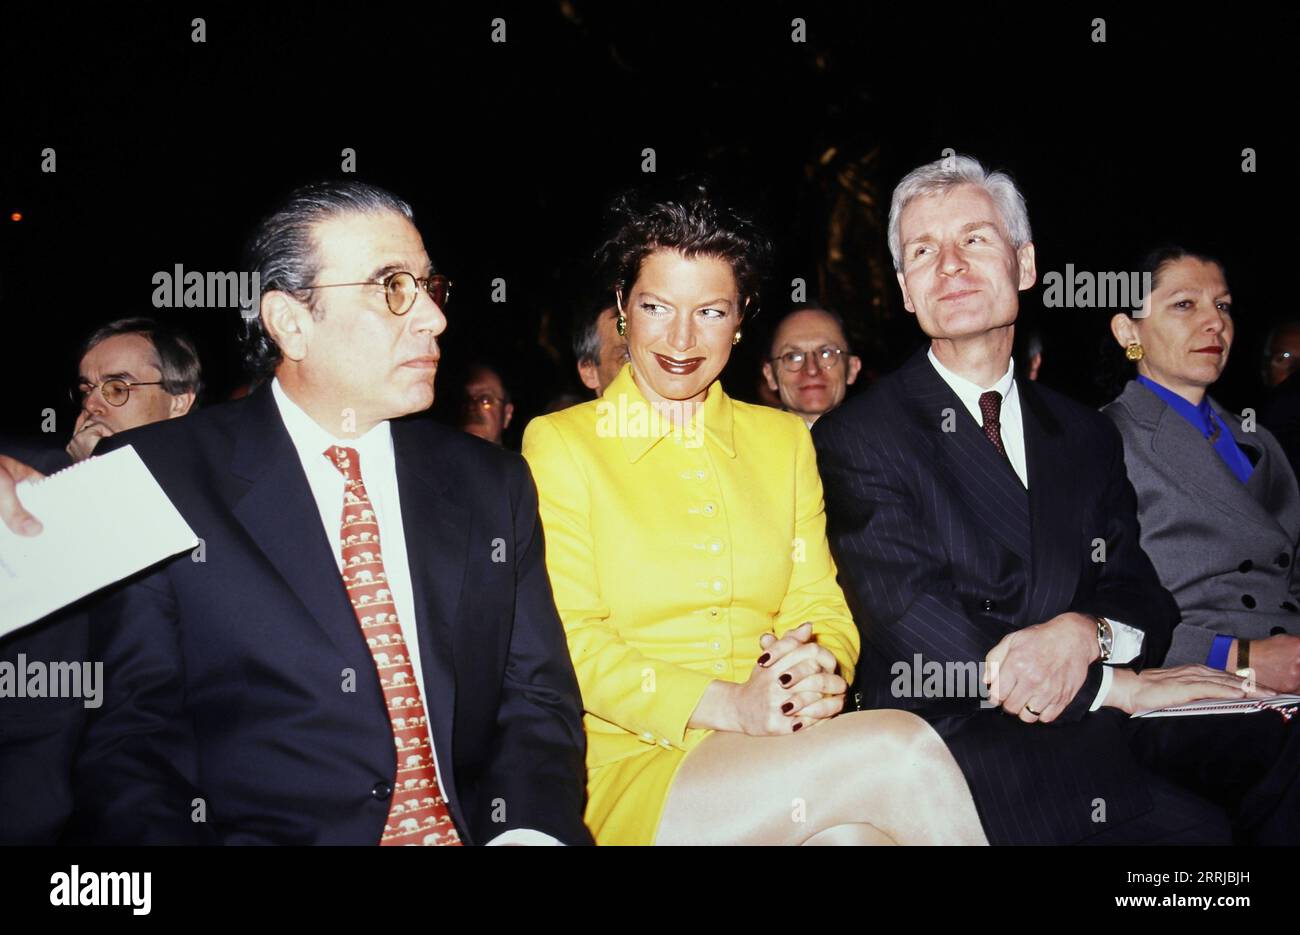 Max Warburg, Aufsichtsratsvorsitzender bei der Hamburger Warburg Bank, Ehefrau Alexandra sowie Hamburgs Erster Bürgermeister Henning Voscherau mit Ehefrau Annerose, bei einer Veranstaltung, circa 1993. Stock Photo